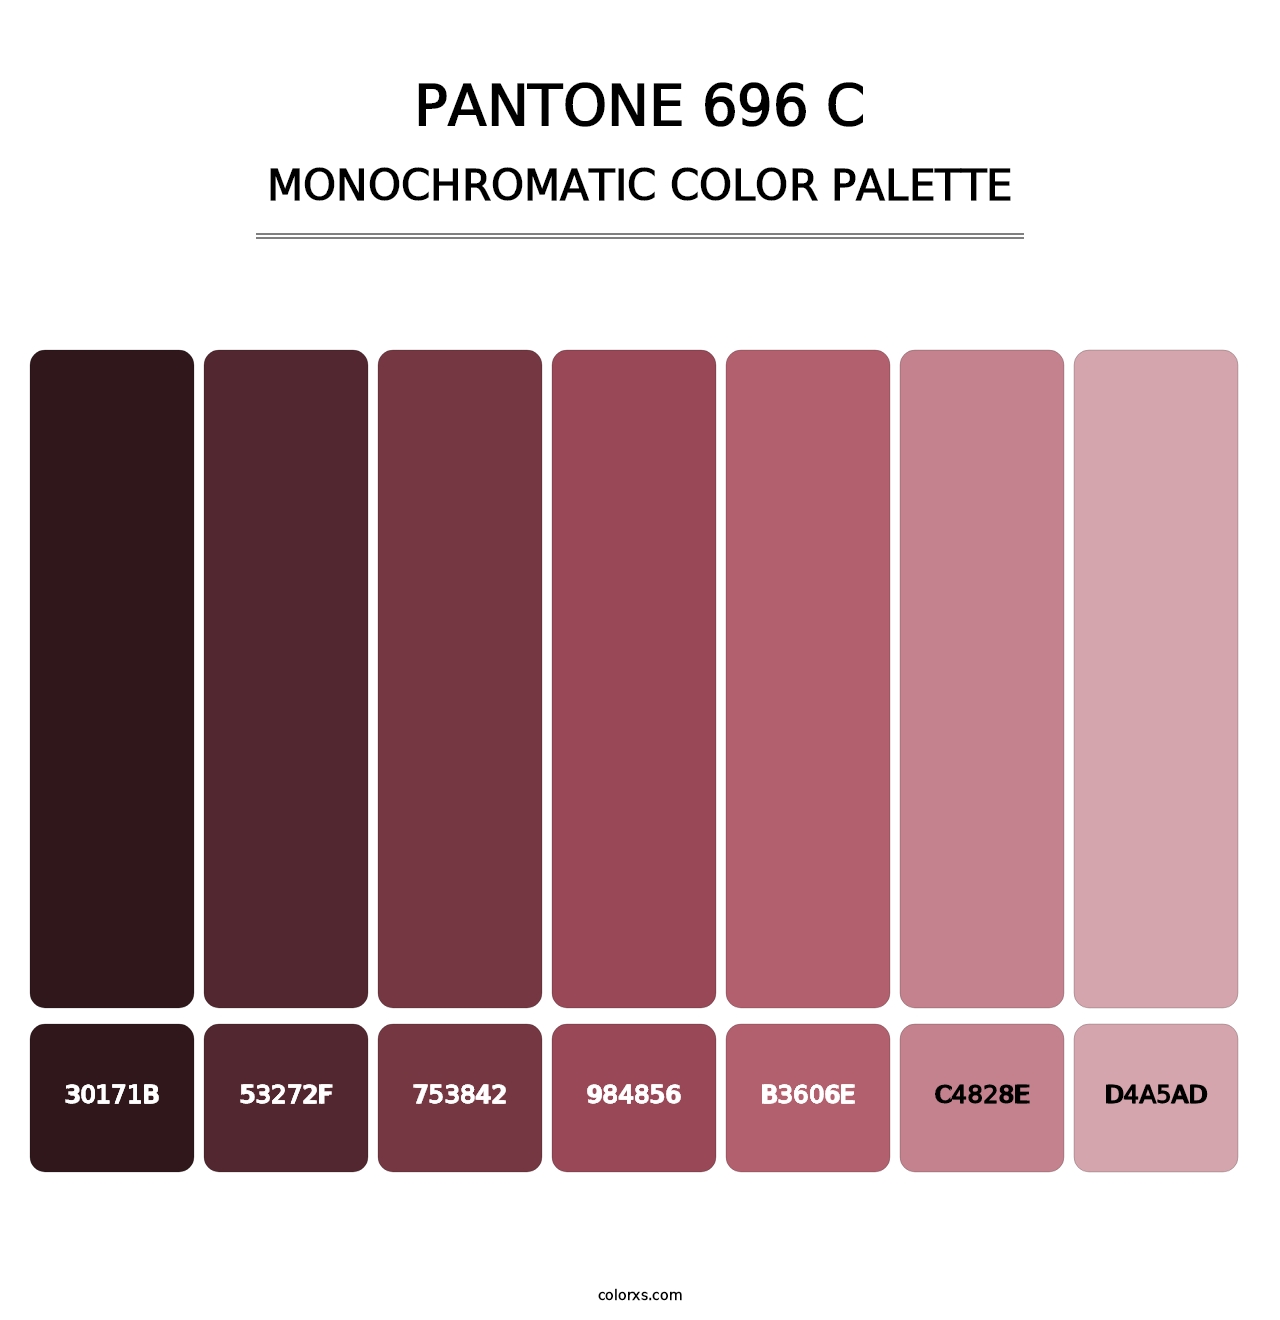 PANTONE 696 C - Monochromatic Color Palette